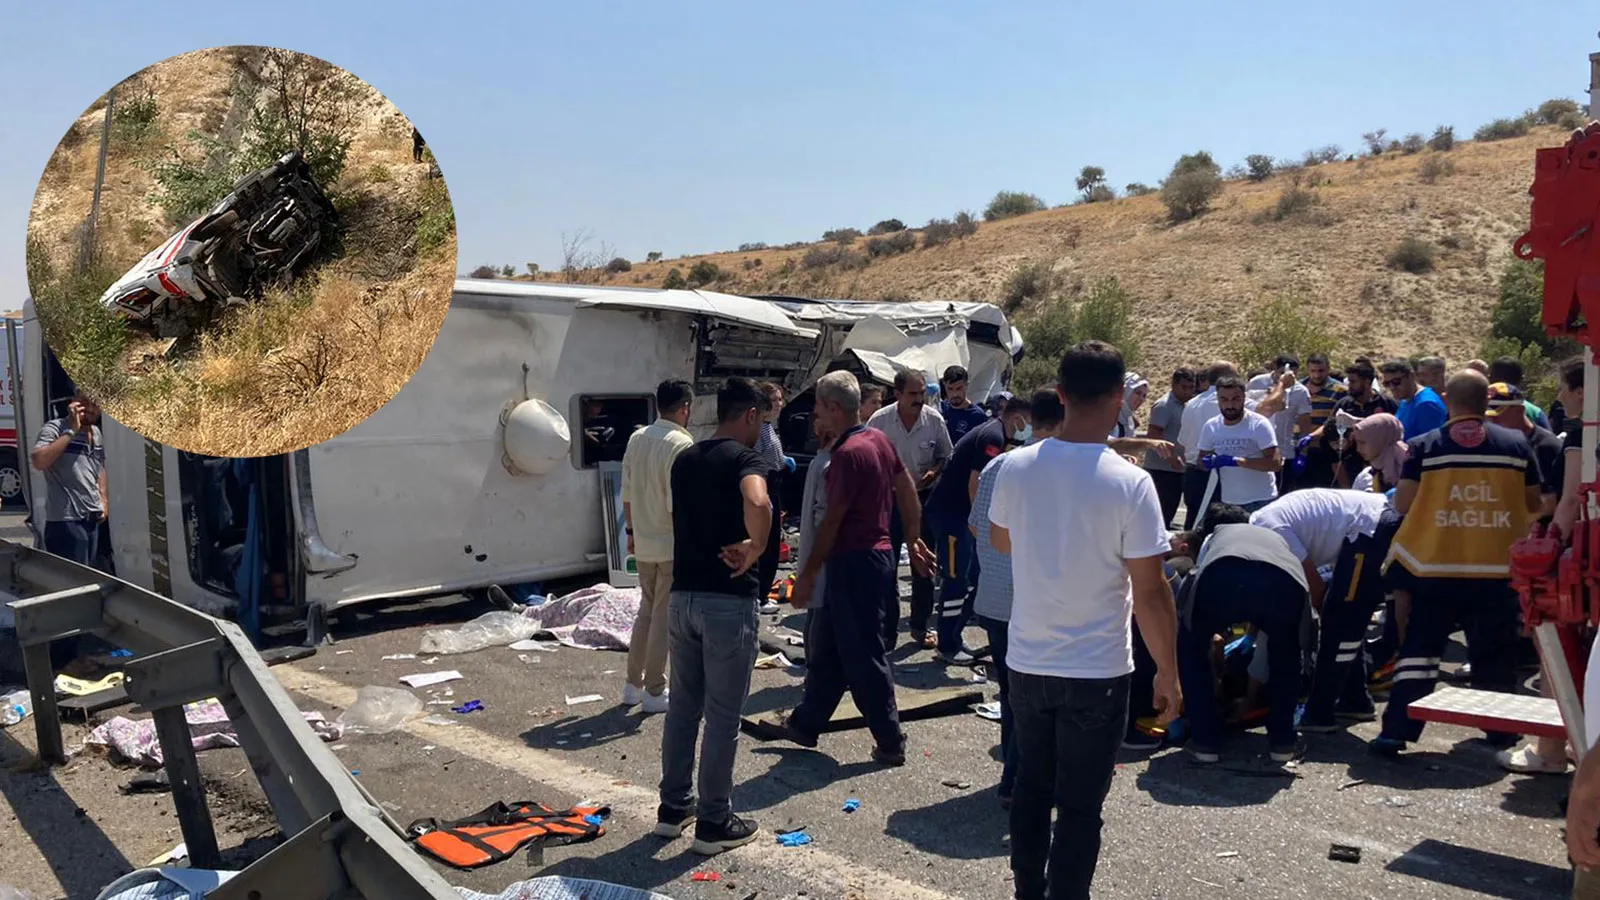 Gaziantep’te otobüs, itfaiye, ambulans ve canlı yayın aracının karıştığı zincirleme kaza: 15 kişi hayatını kaybetti